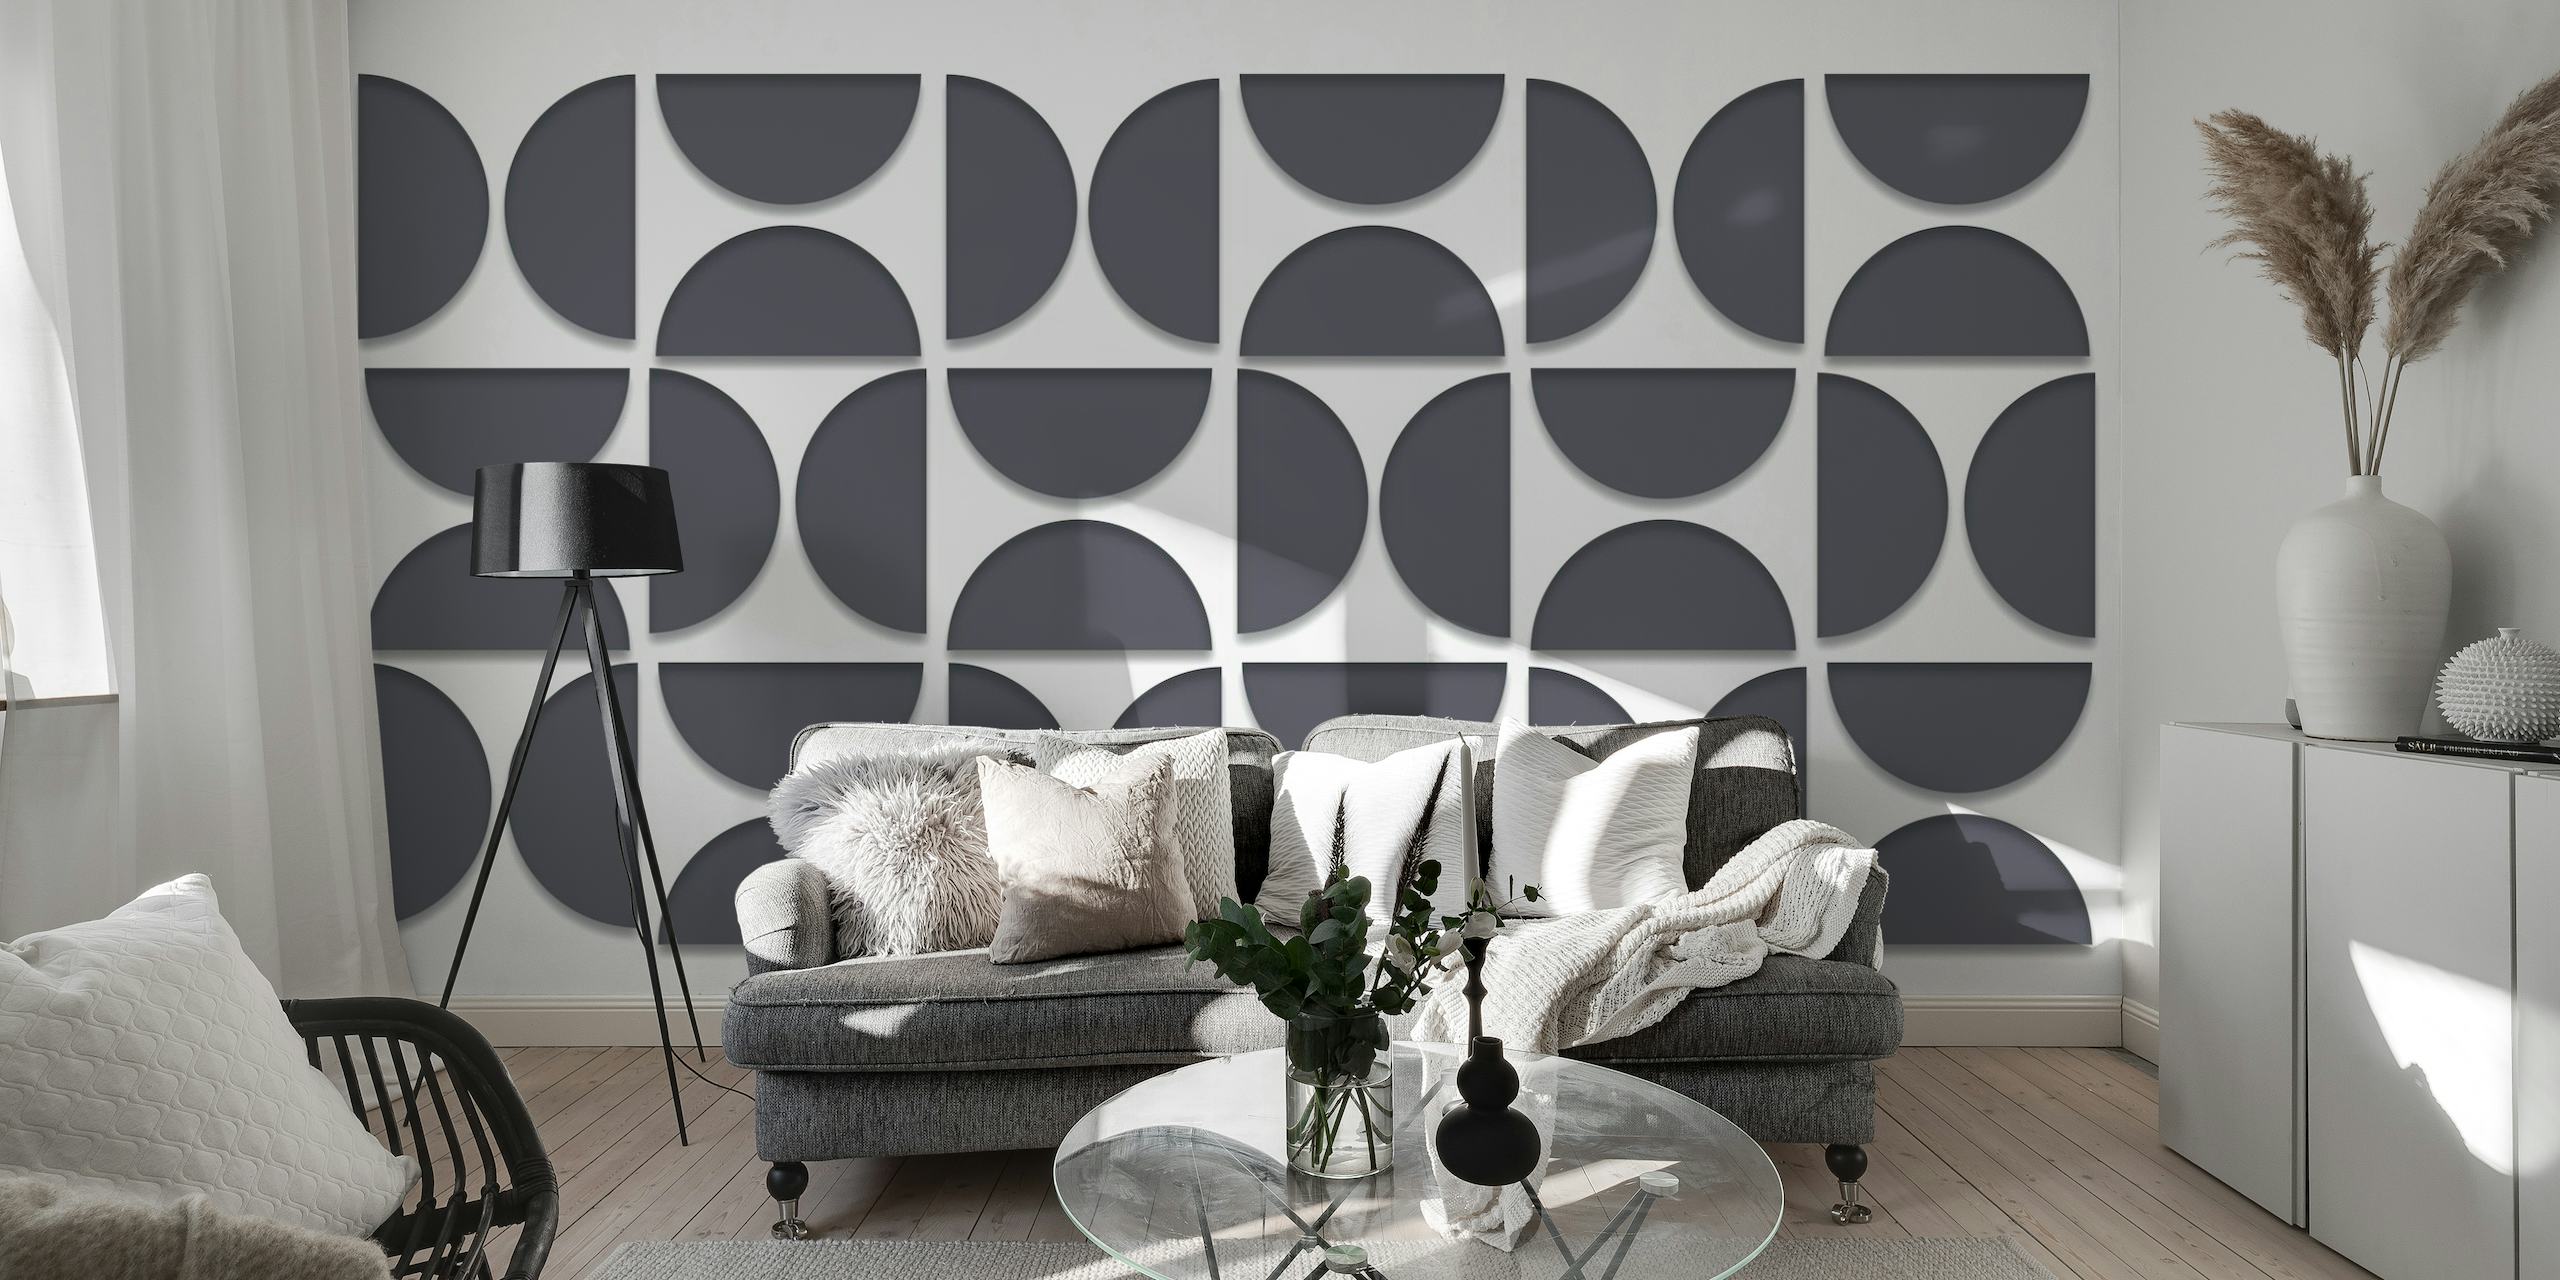 3D iluzija inspirirana Bauhausom, geometrijski zidni mural u crno-bijeloj boji